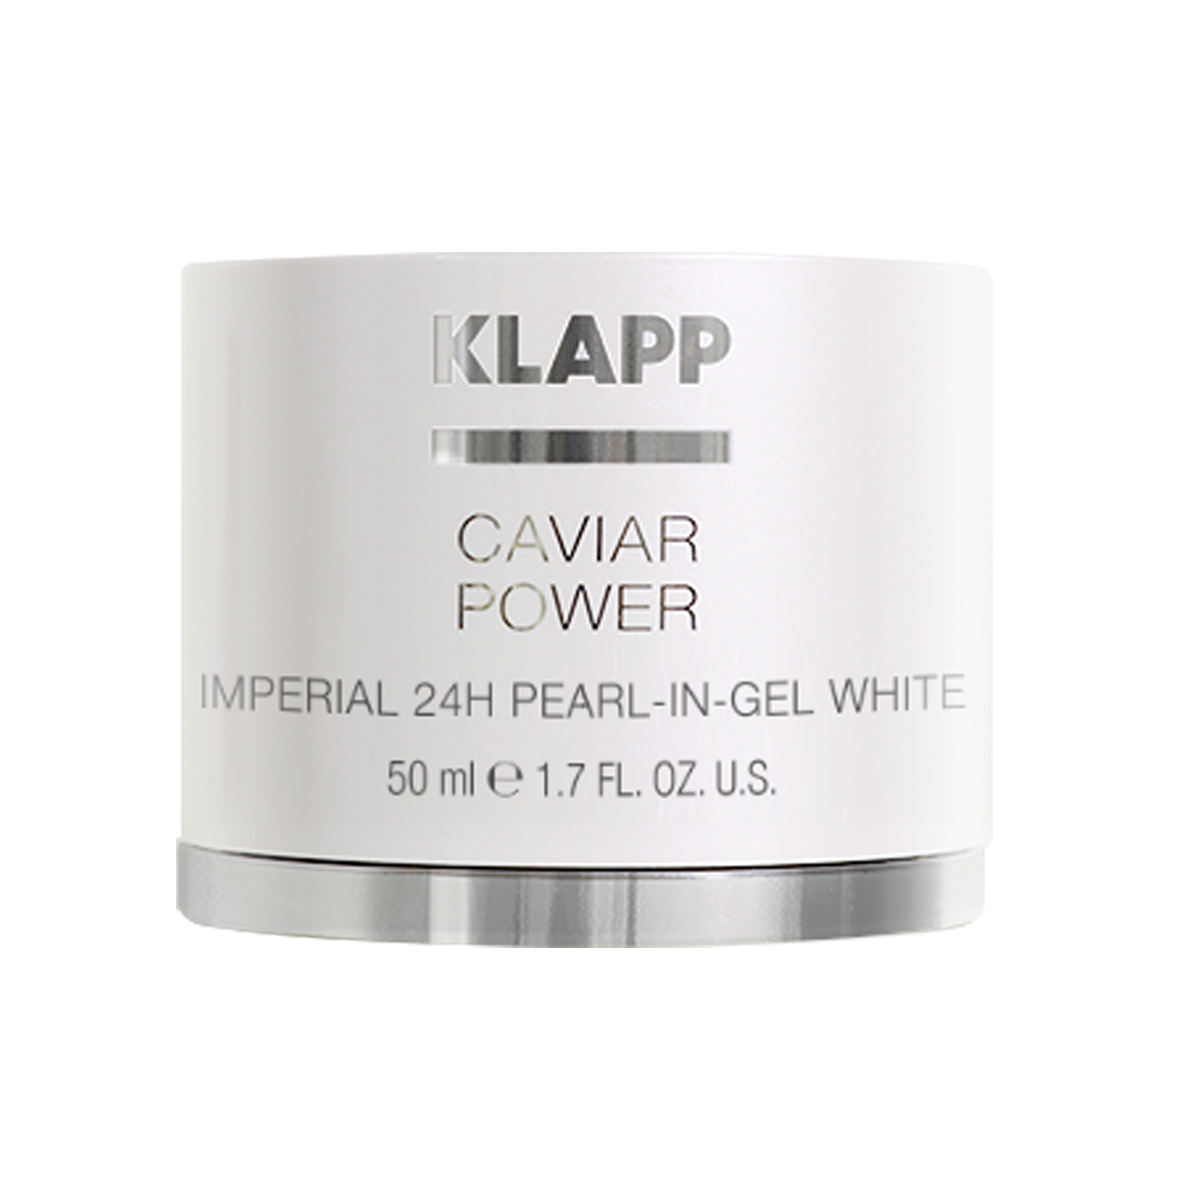 KLAPP Caviar Power Imperial 24h Pearl in Gel White 50ml